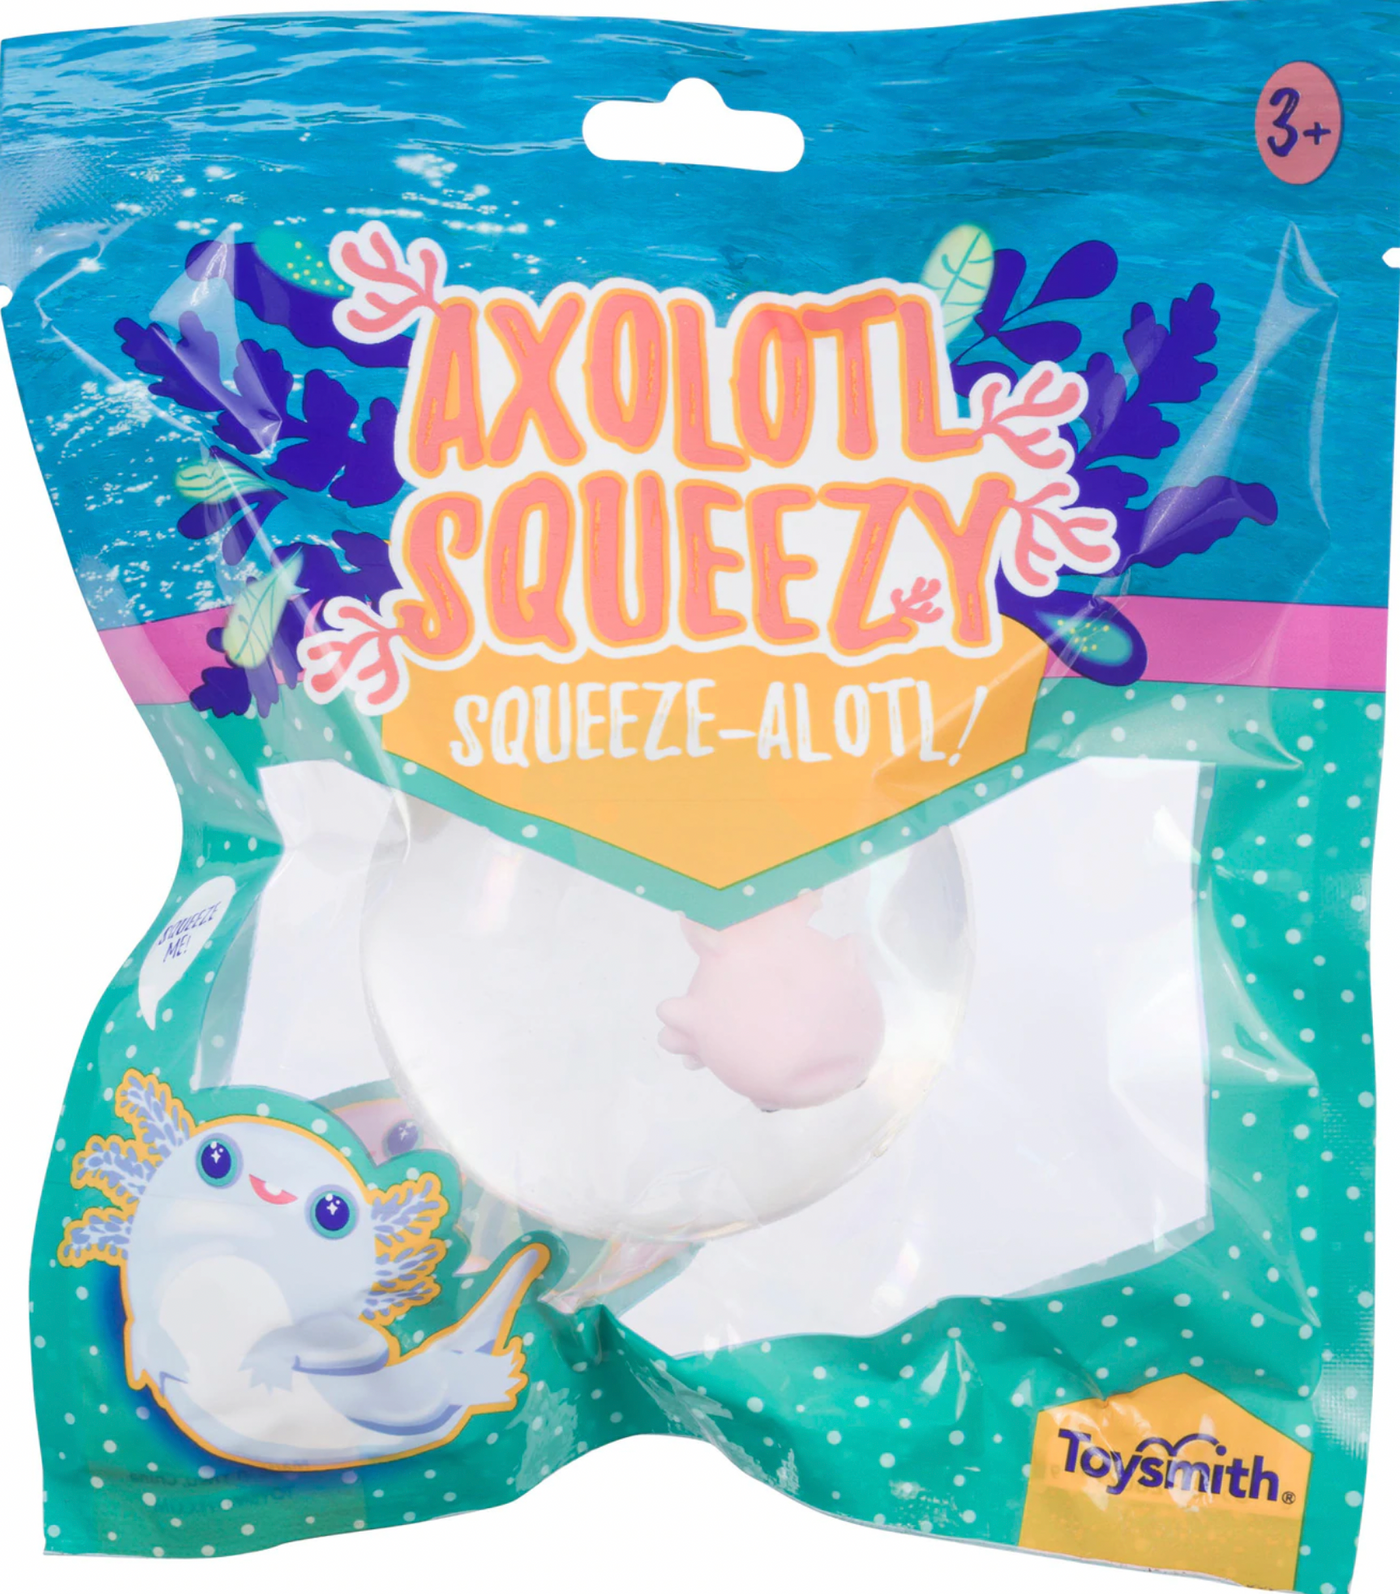 Axolotl Squeeze Ball - Mumzie's Children